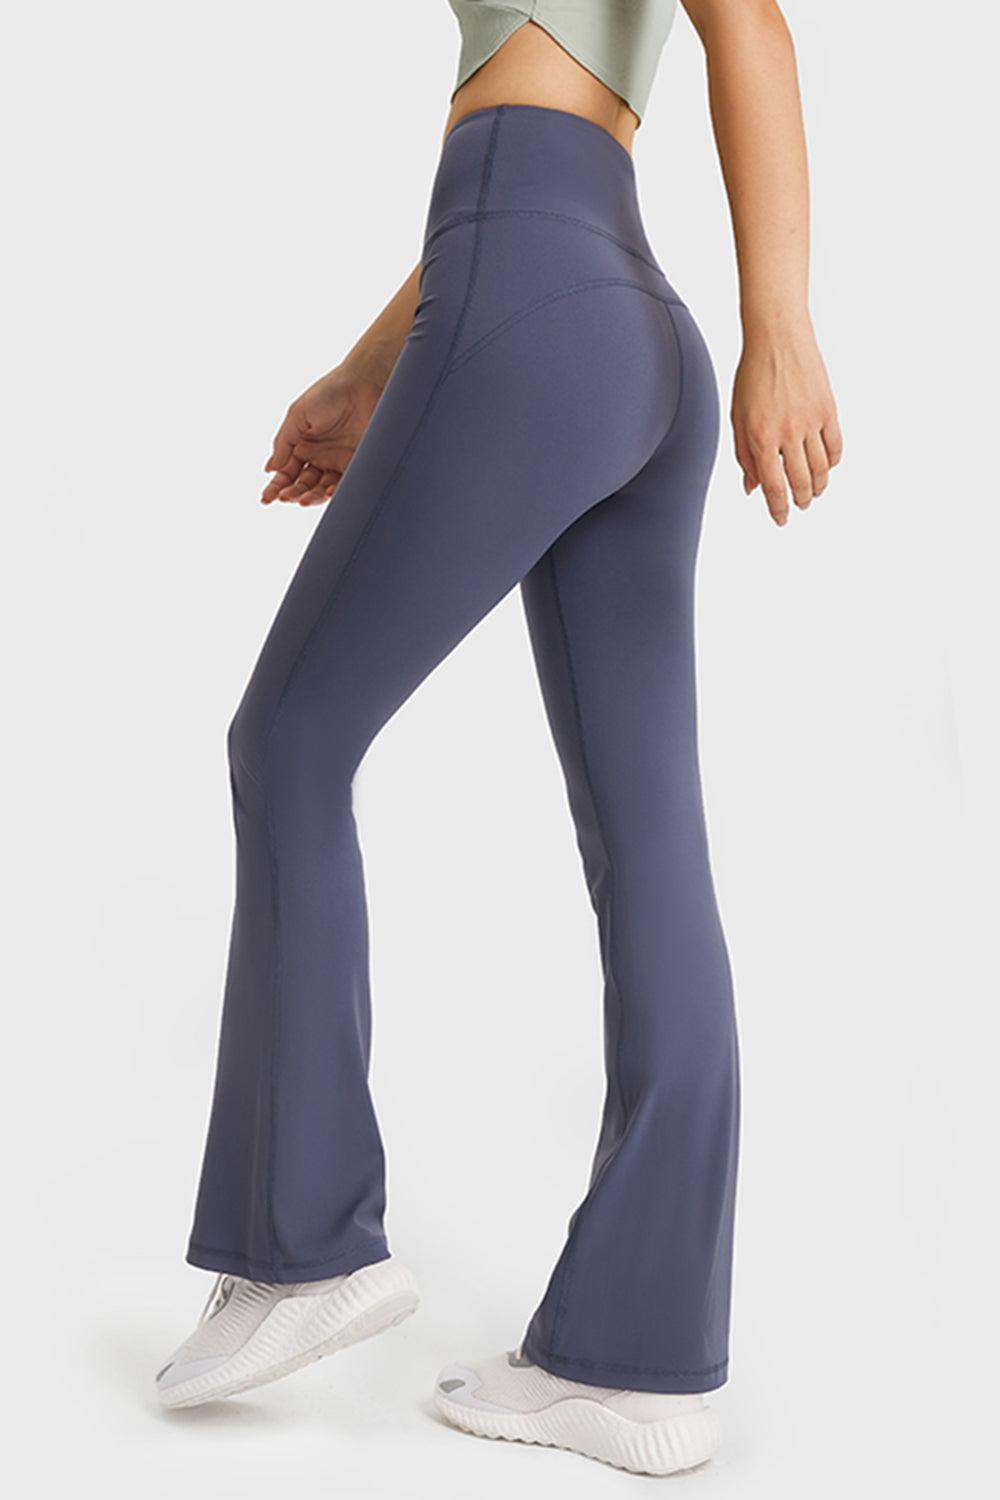 Elastic Waist Flare Yoga Pants-BOTTOM SIZES SMALL MEDIUM LARGE-[Adult]-[Female]-Blue Zone Planet